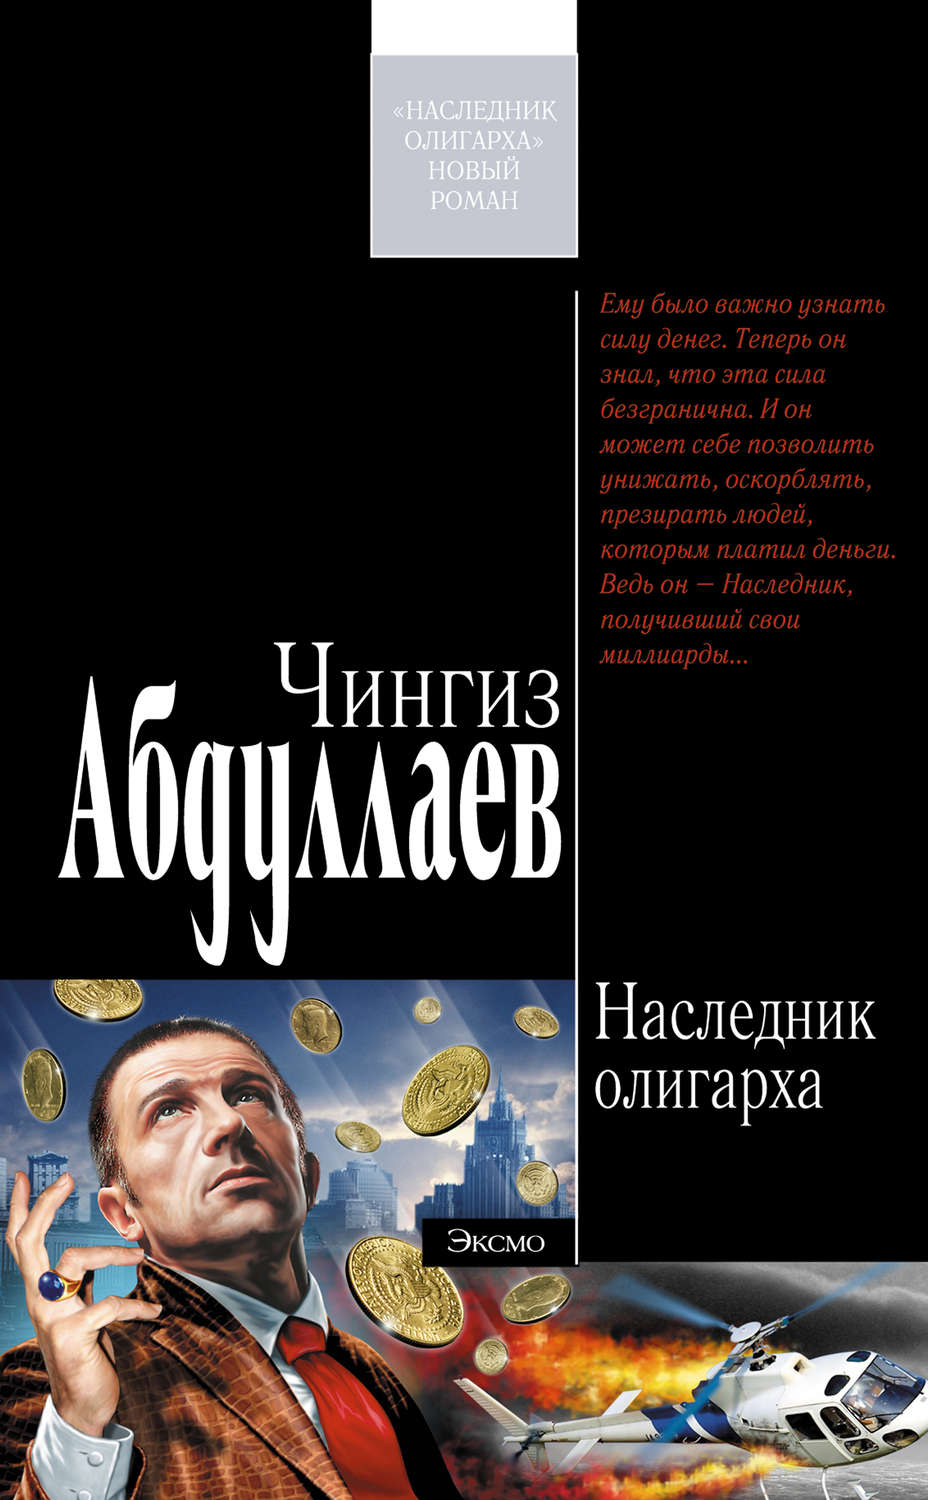 Чингиз абдуллаев скачать бесплатно книги fb2